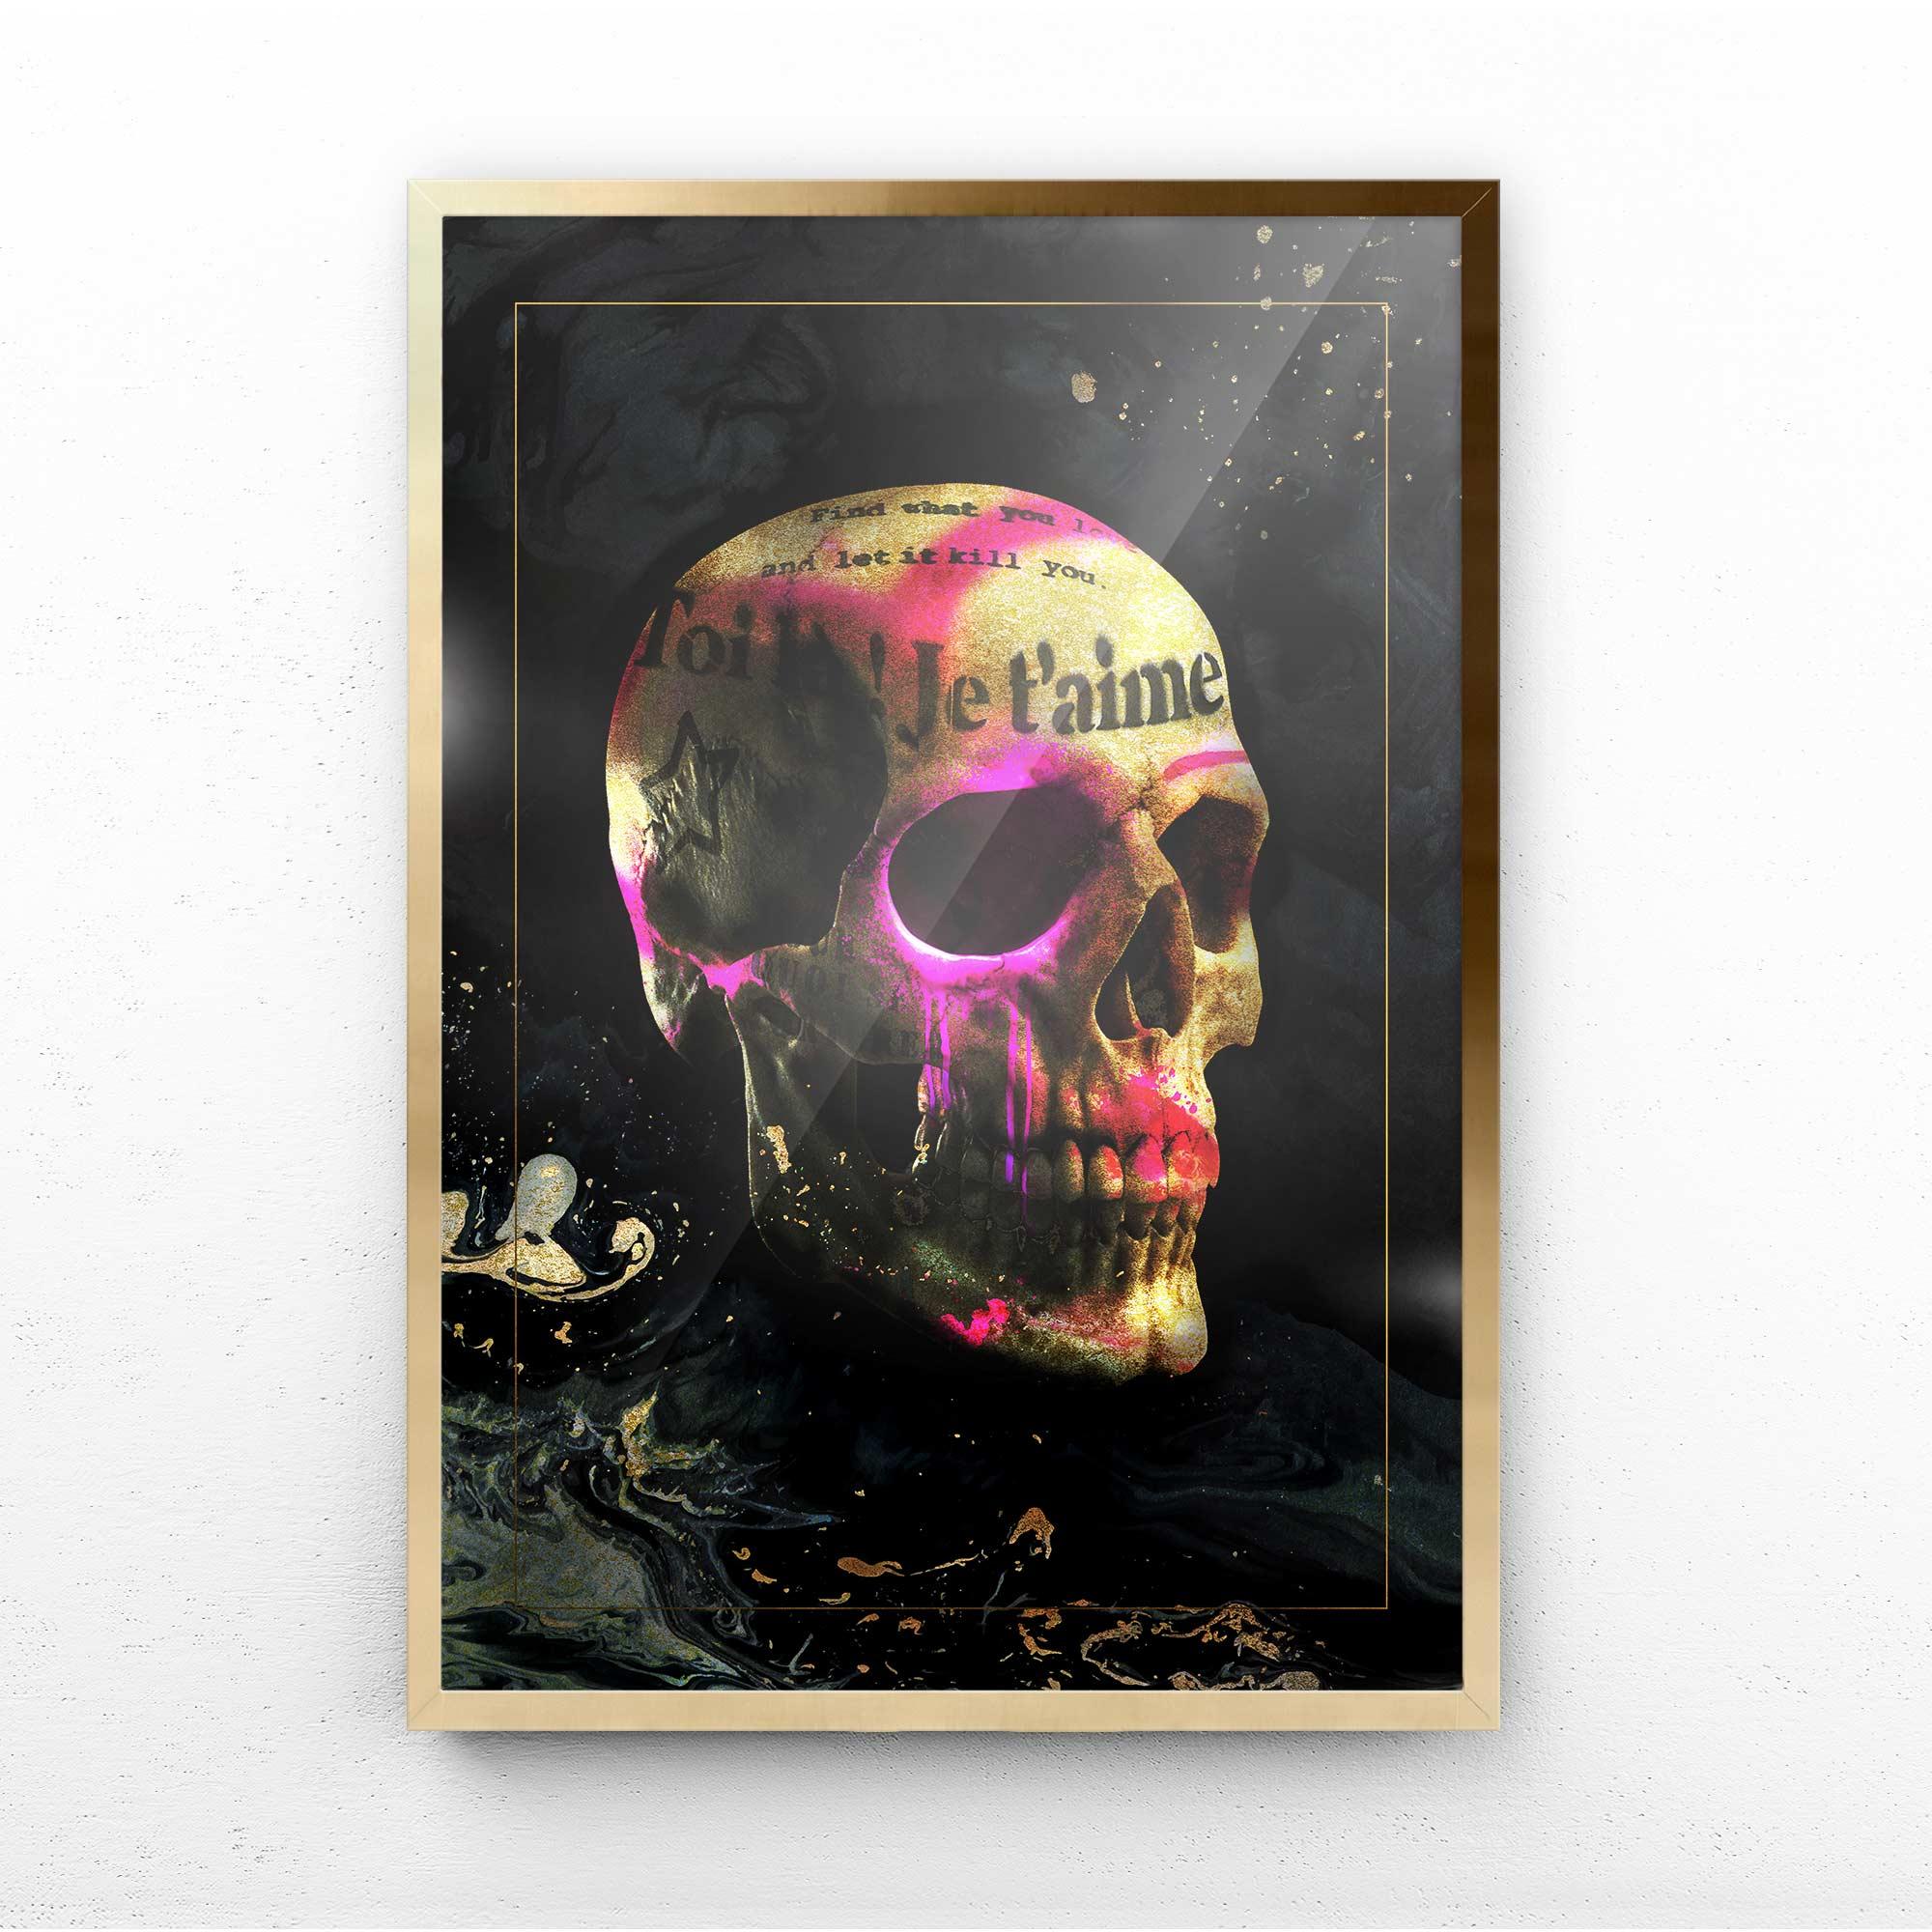 prints of skulls